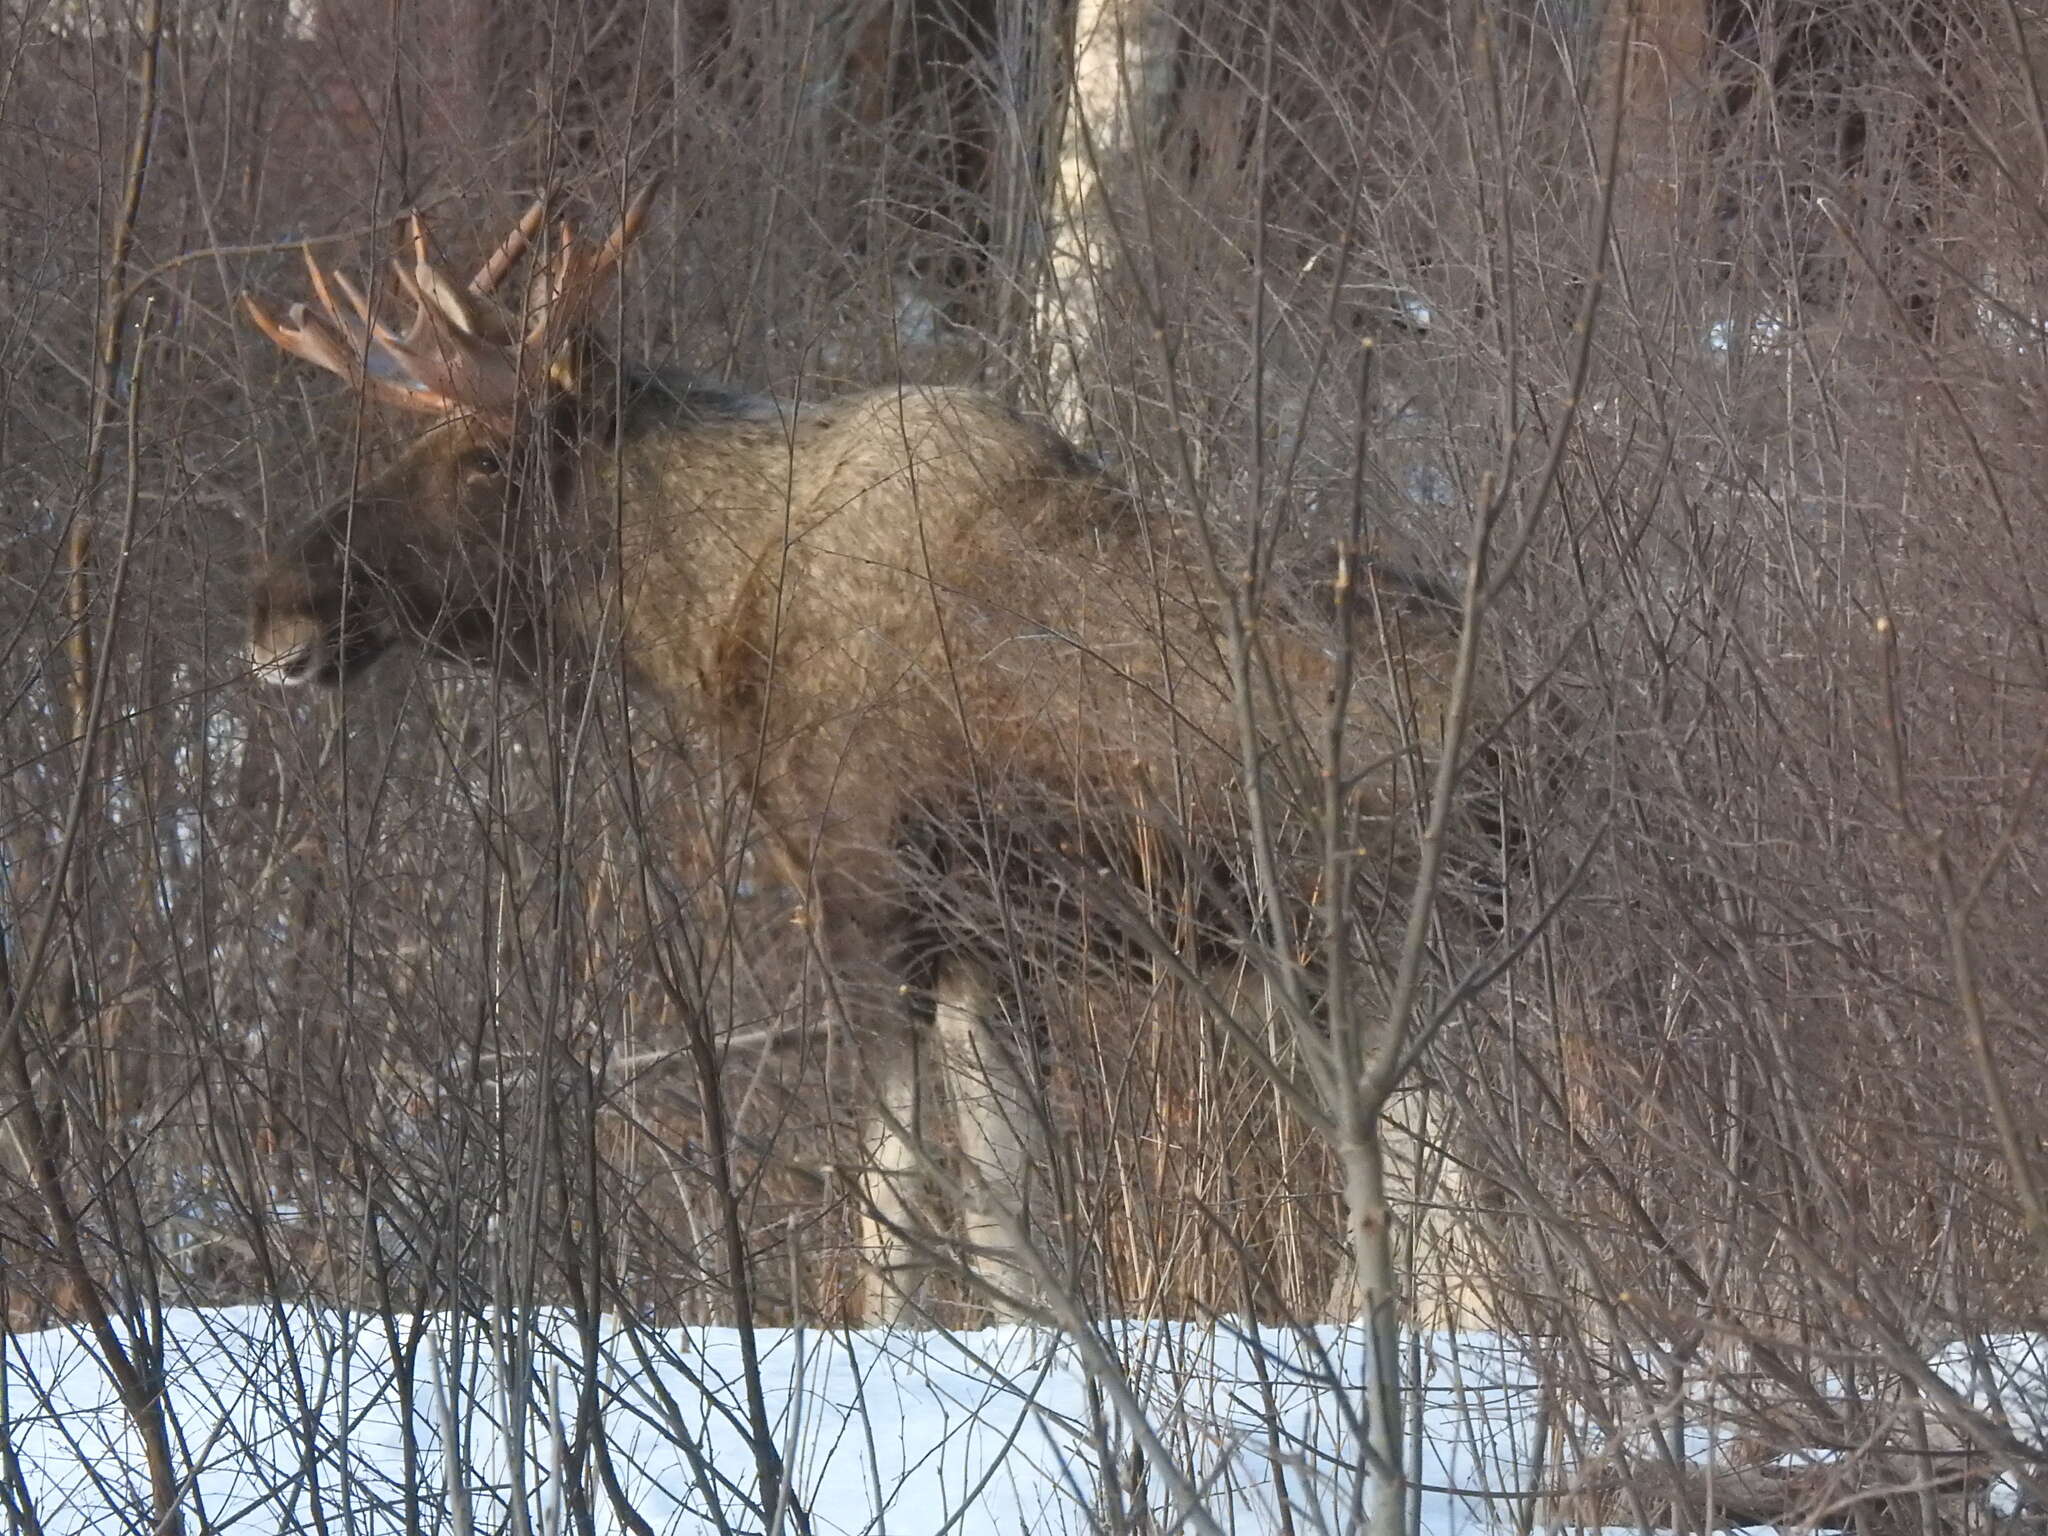 Image of Elk